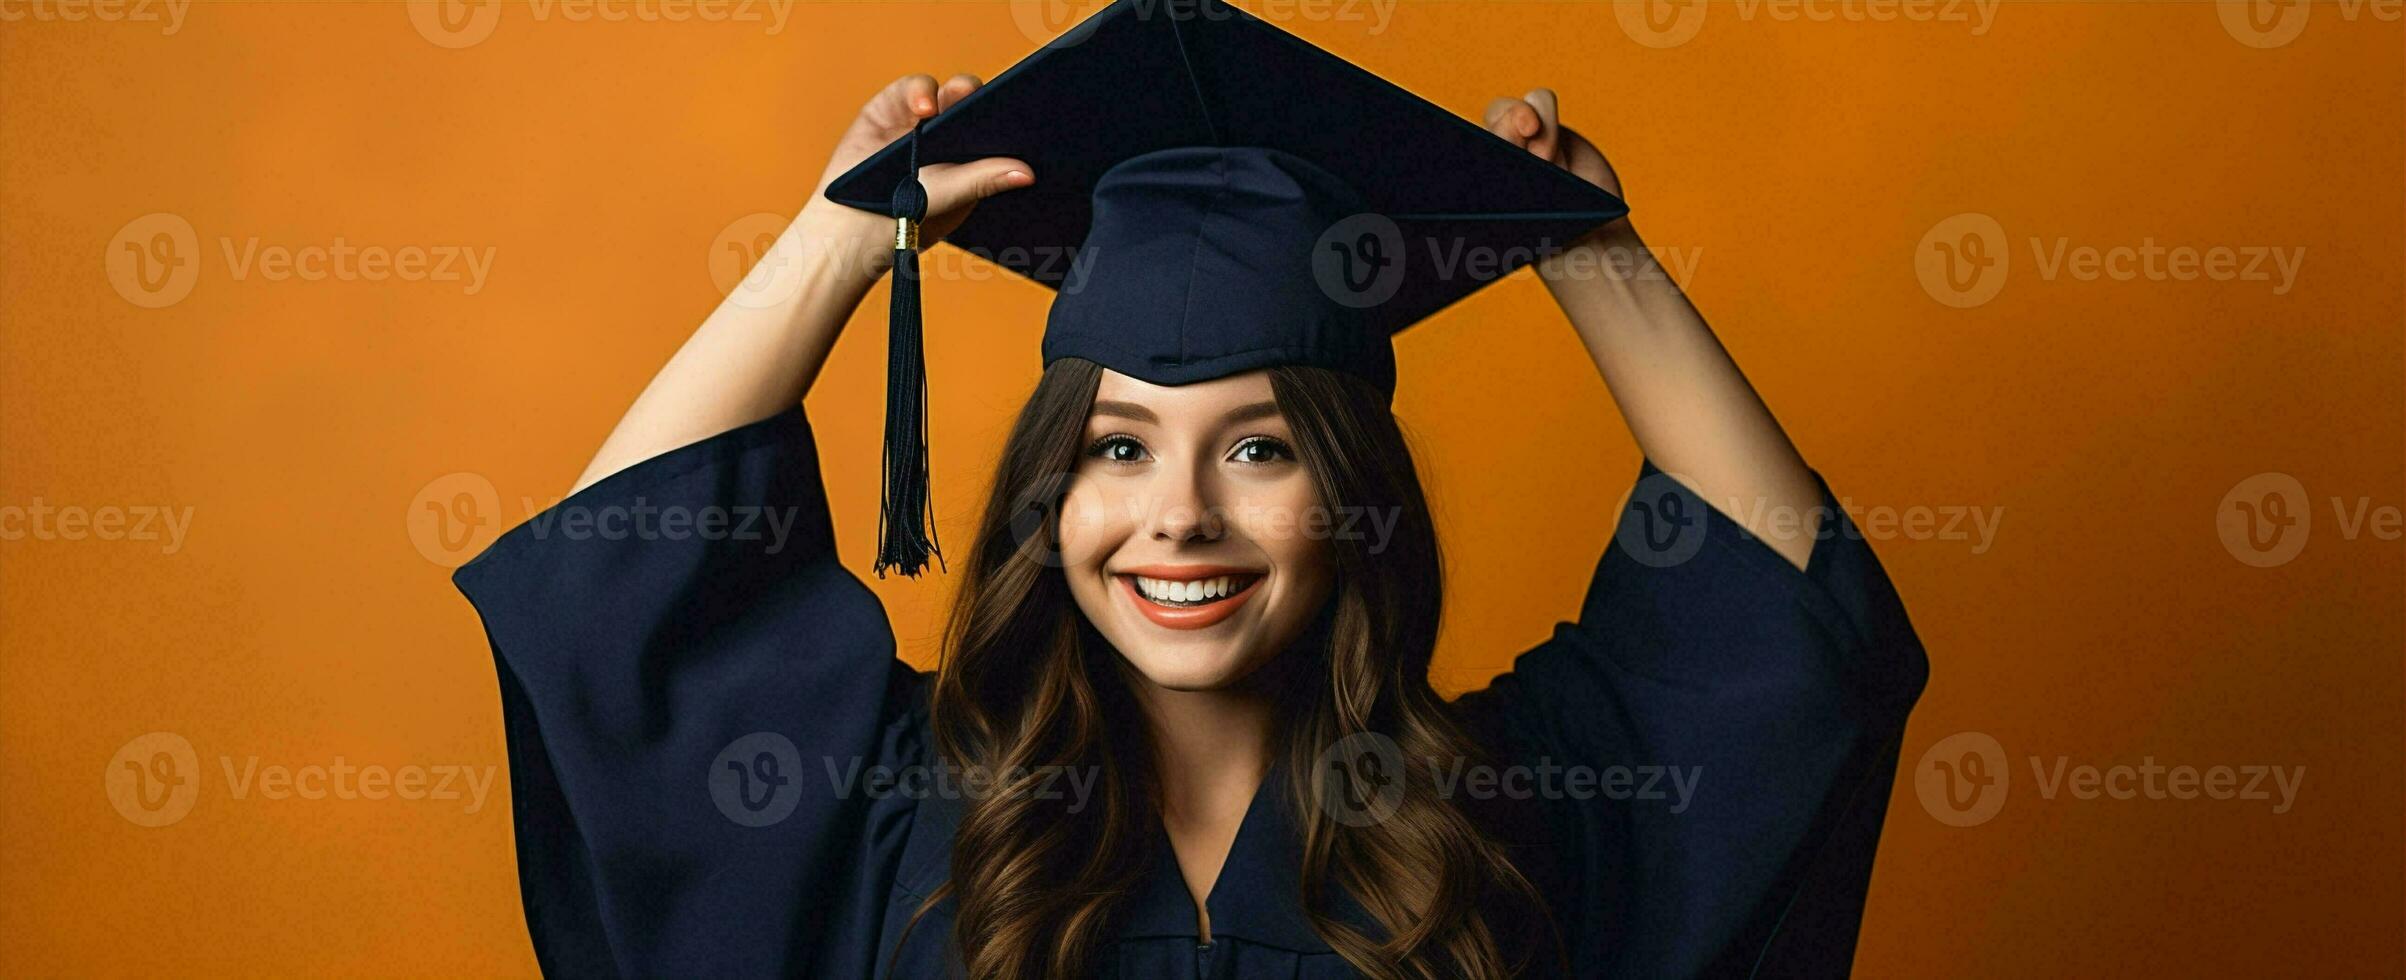 glimlach vrouw zwart academisch afstuderen prestatie toekomst prestatie pet college Universiteit mate onderwijs leerling foto